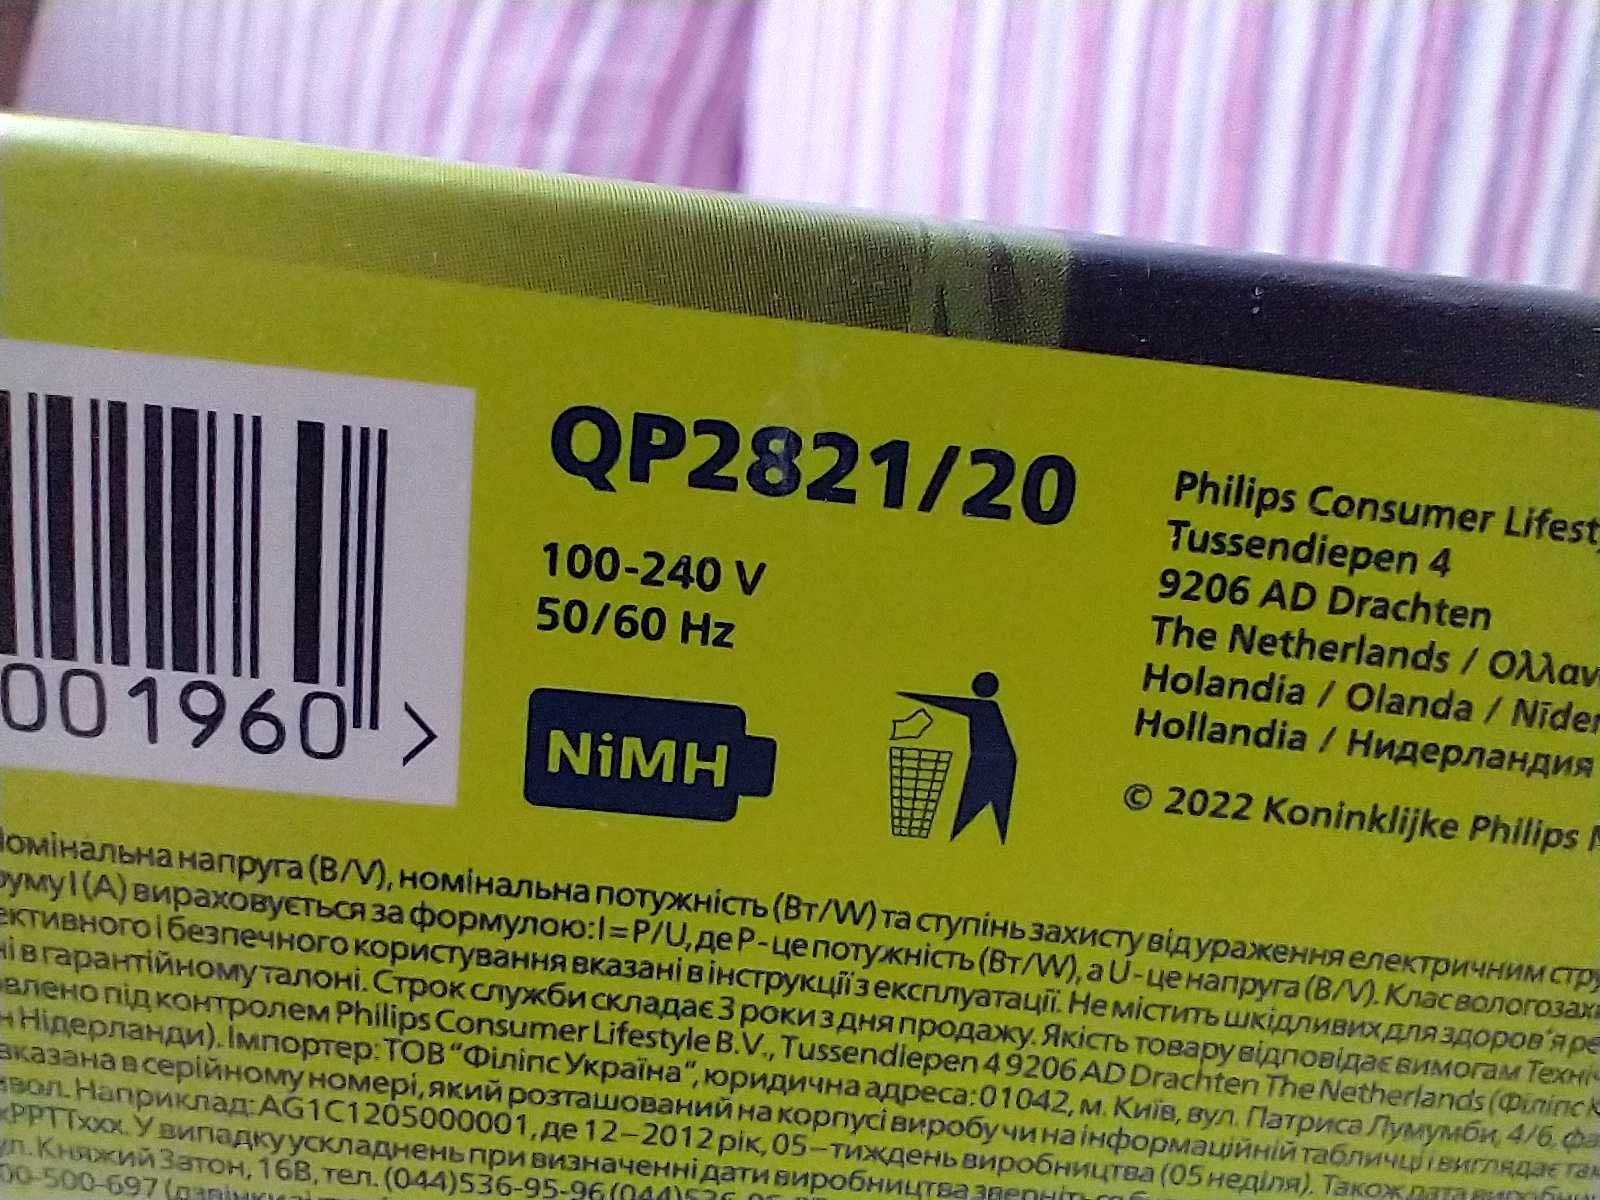 Philips QP2821/20 oryginalnie zapakowana